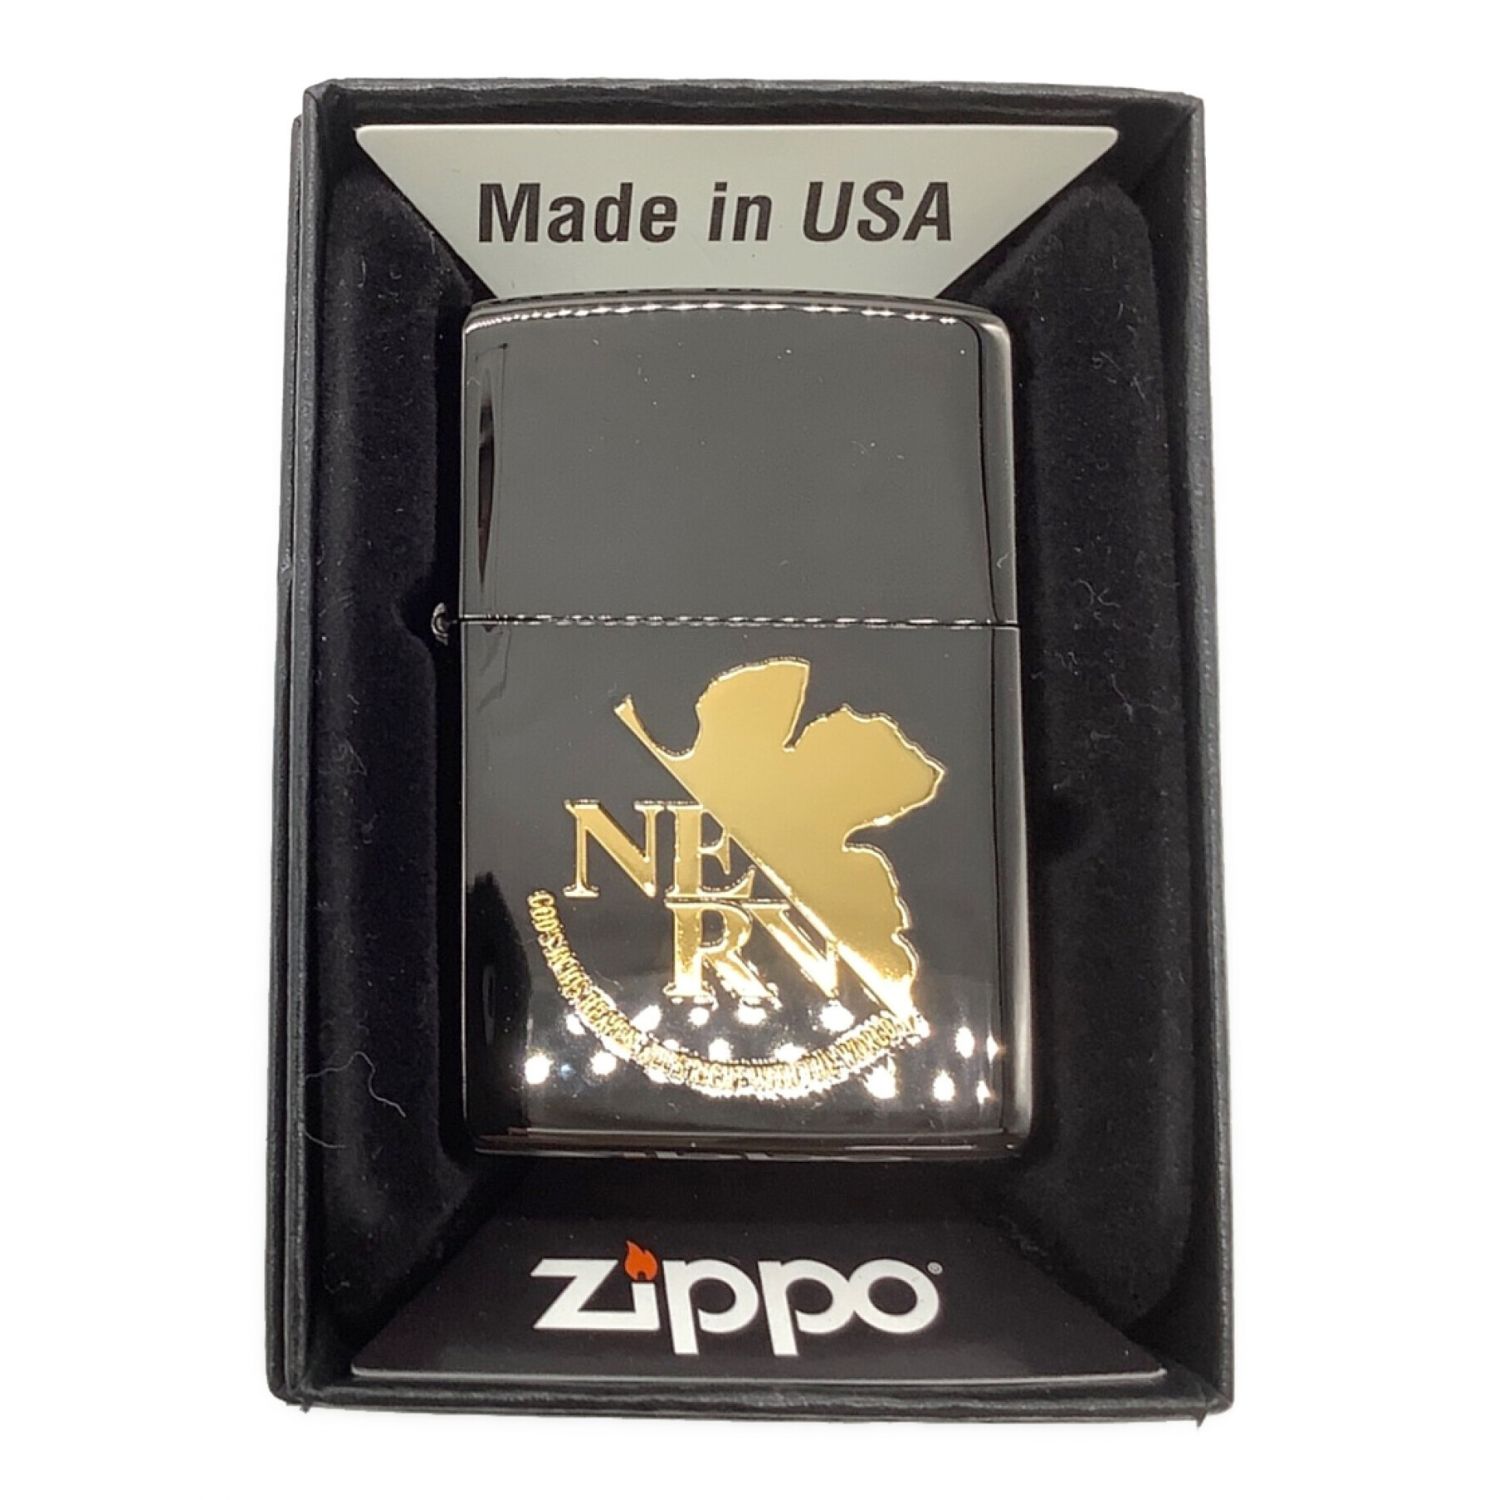 ZIPPO (ジッポ) オイルライター エヴァンゲリオン NERV BLACK&GOLD 